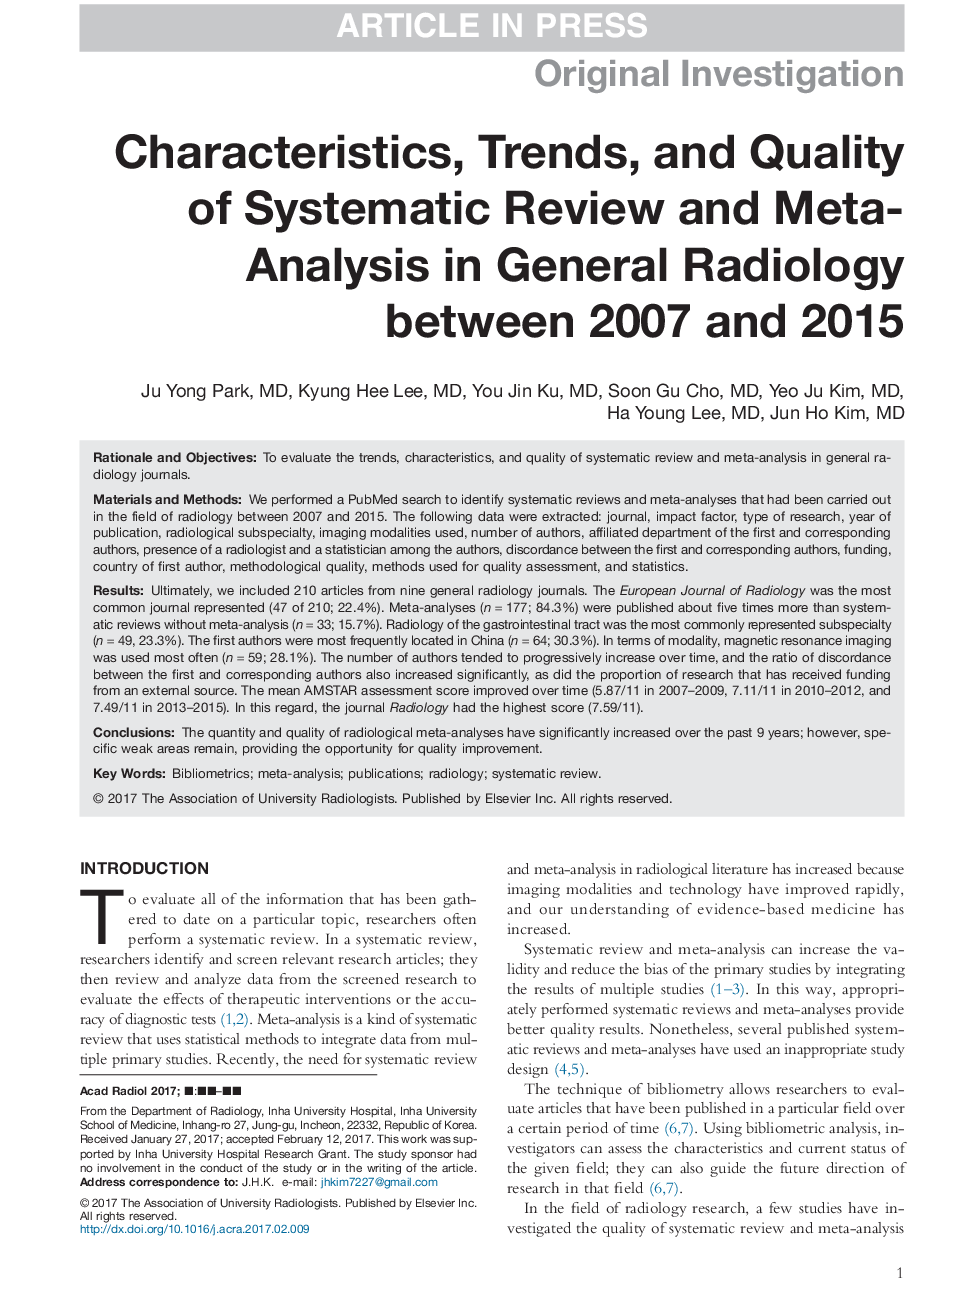 ویژگی ها، روند و کیفیت بازبینی سیستماتیک و متا آنالیز در رادیولوژی عمومی بین سال های 2007 و 2015 